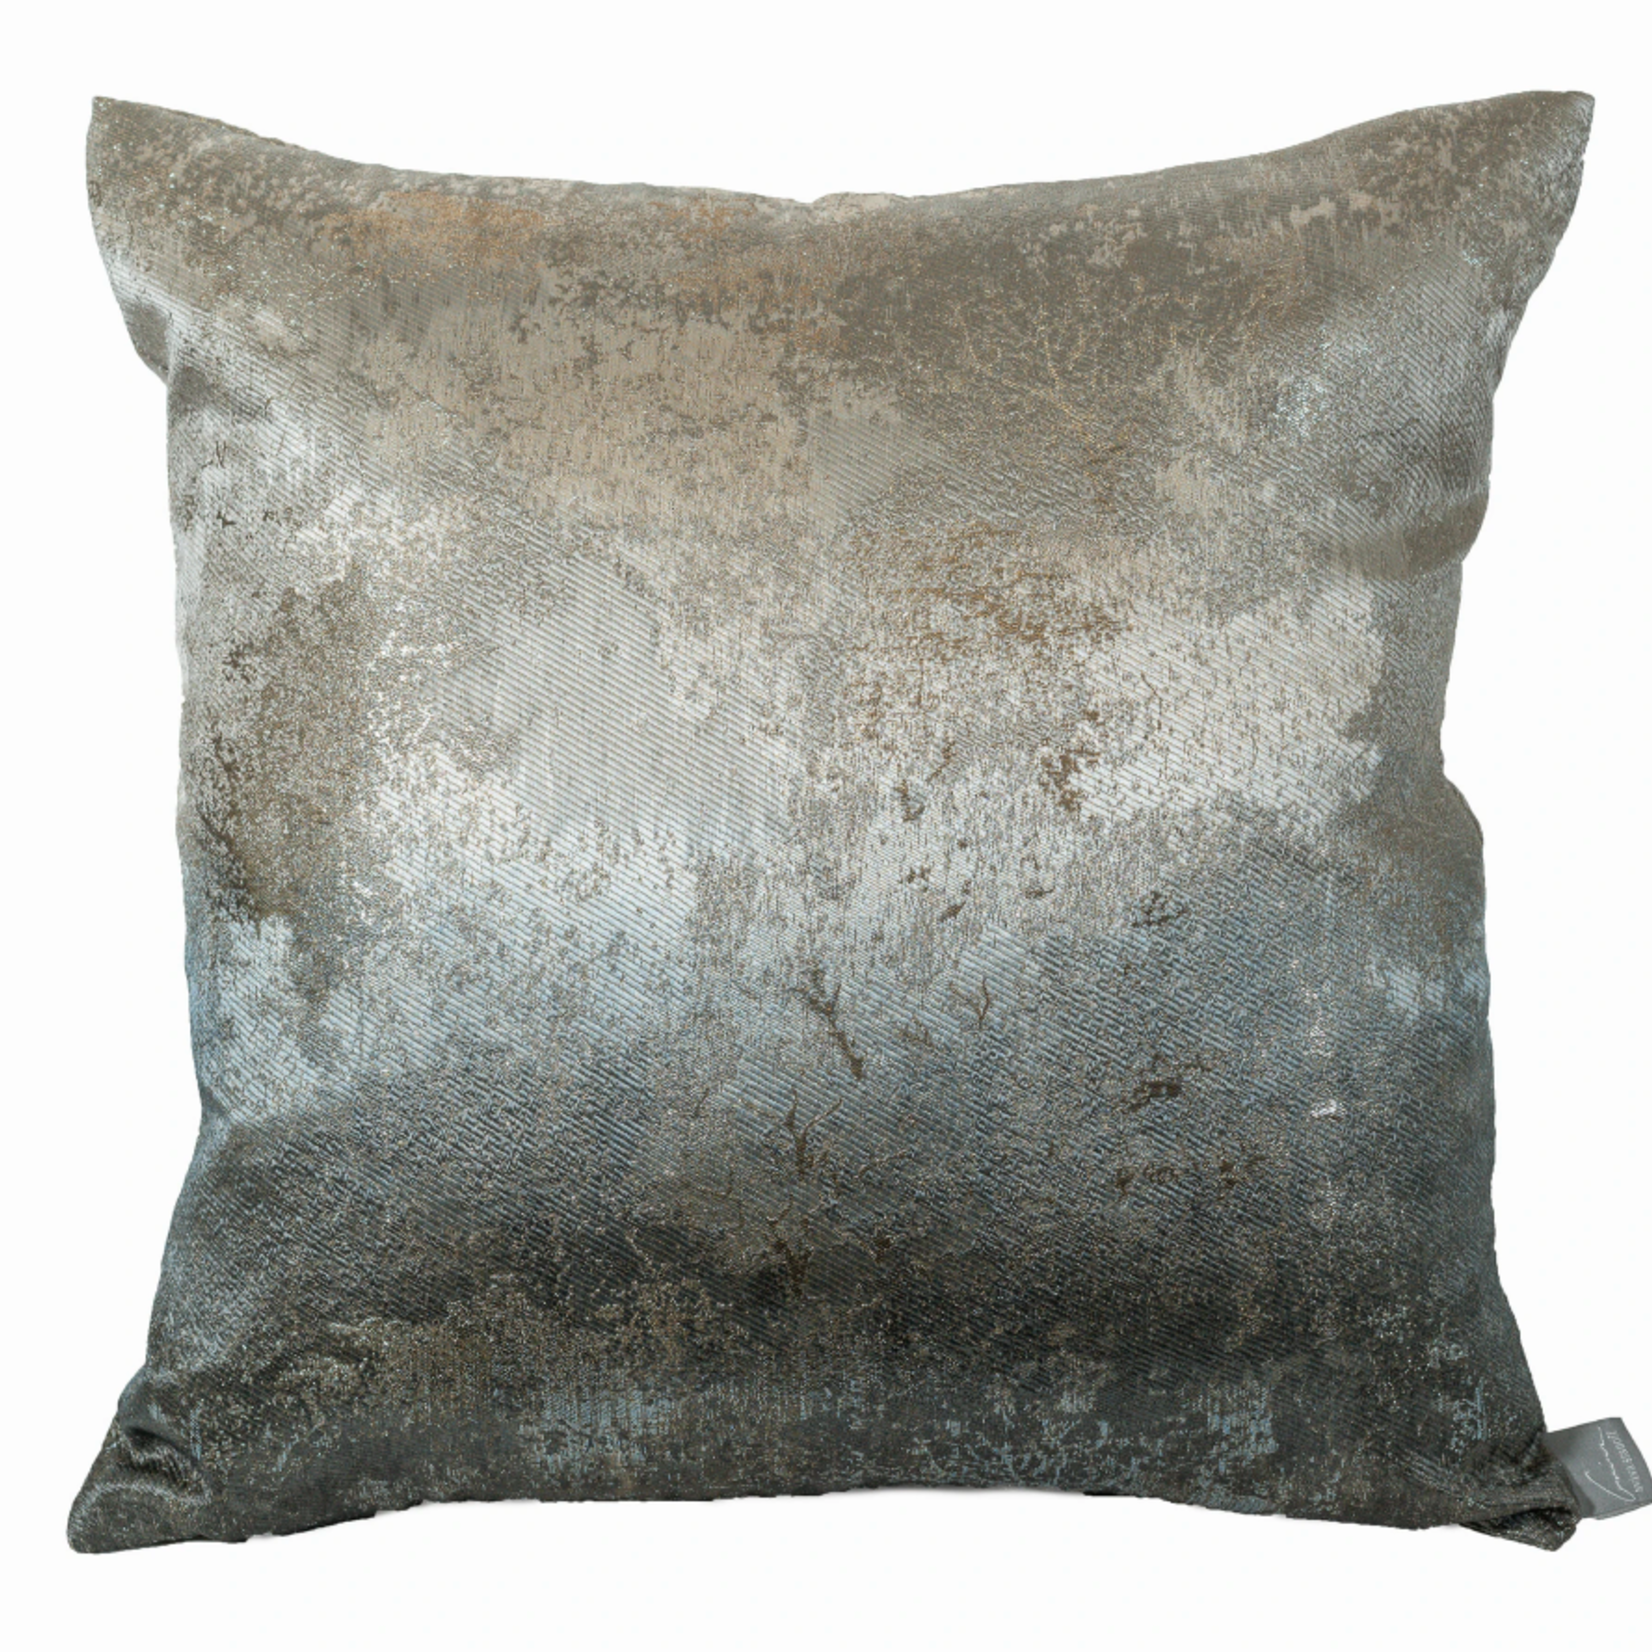 Ombre Smolder Estate Pillow, Silver, 20x20